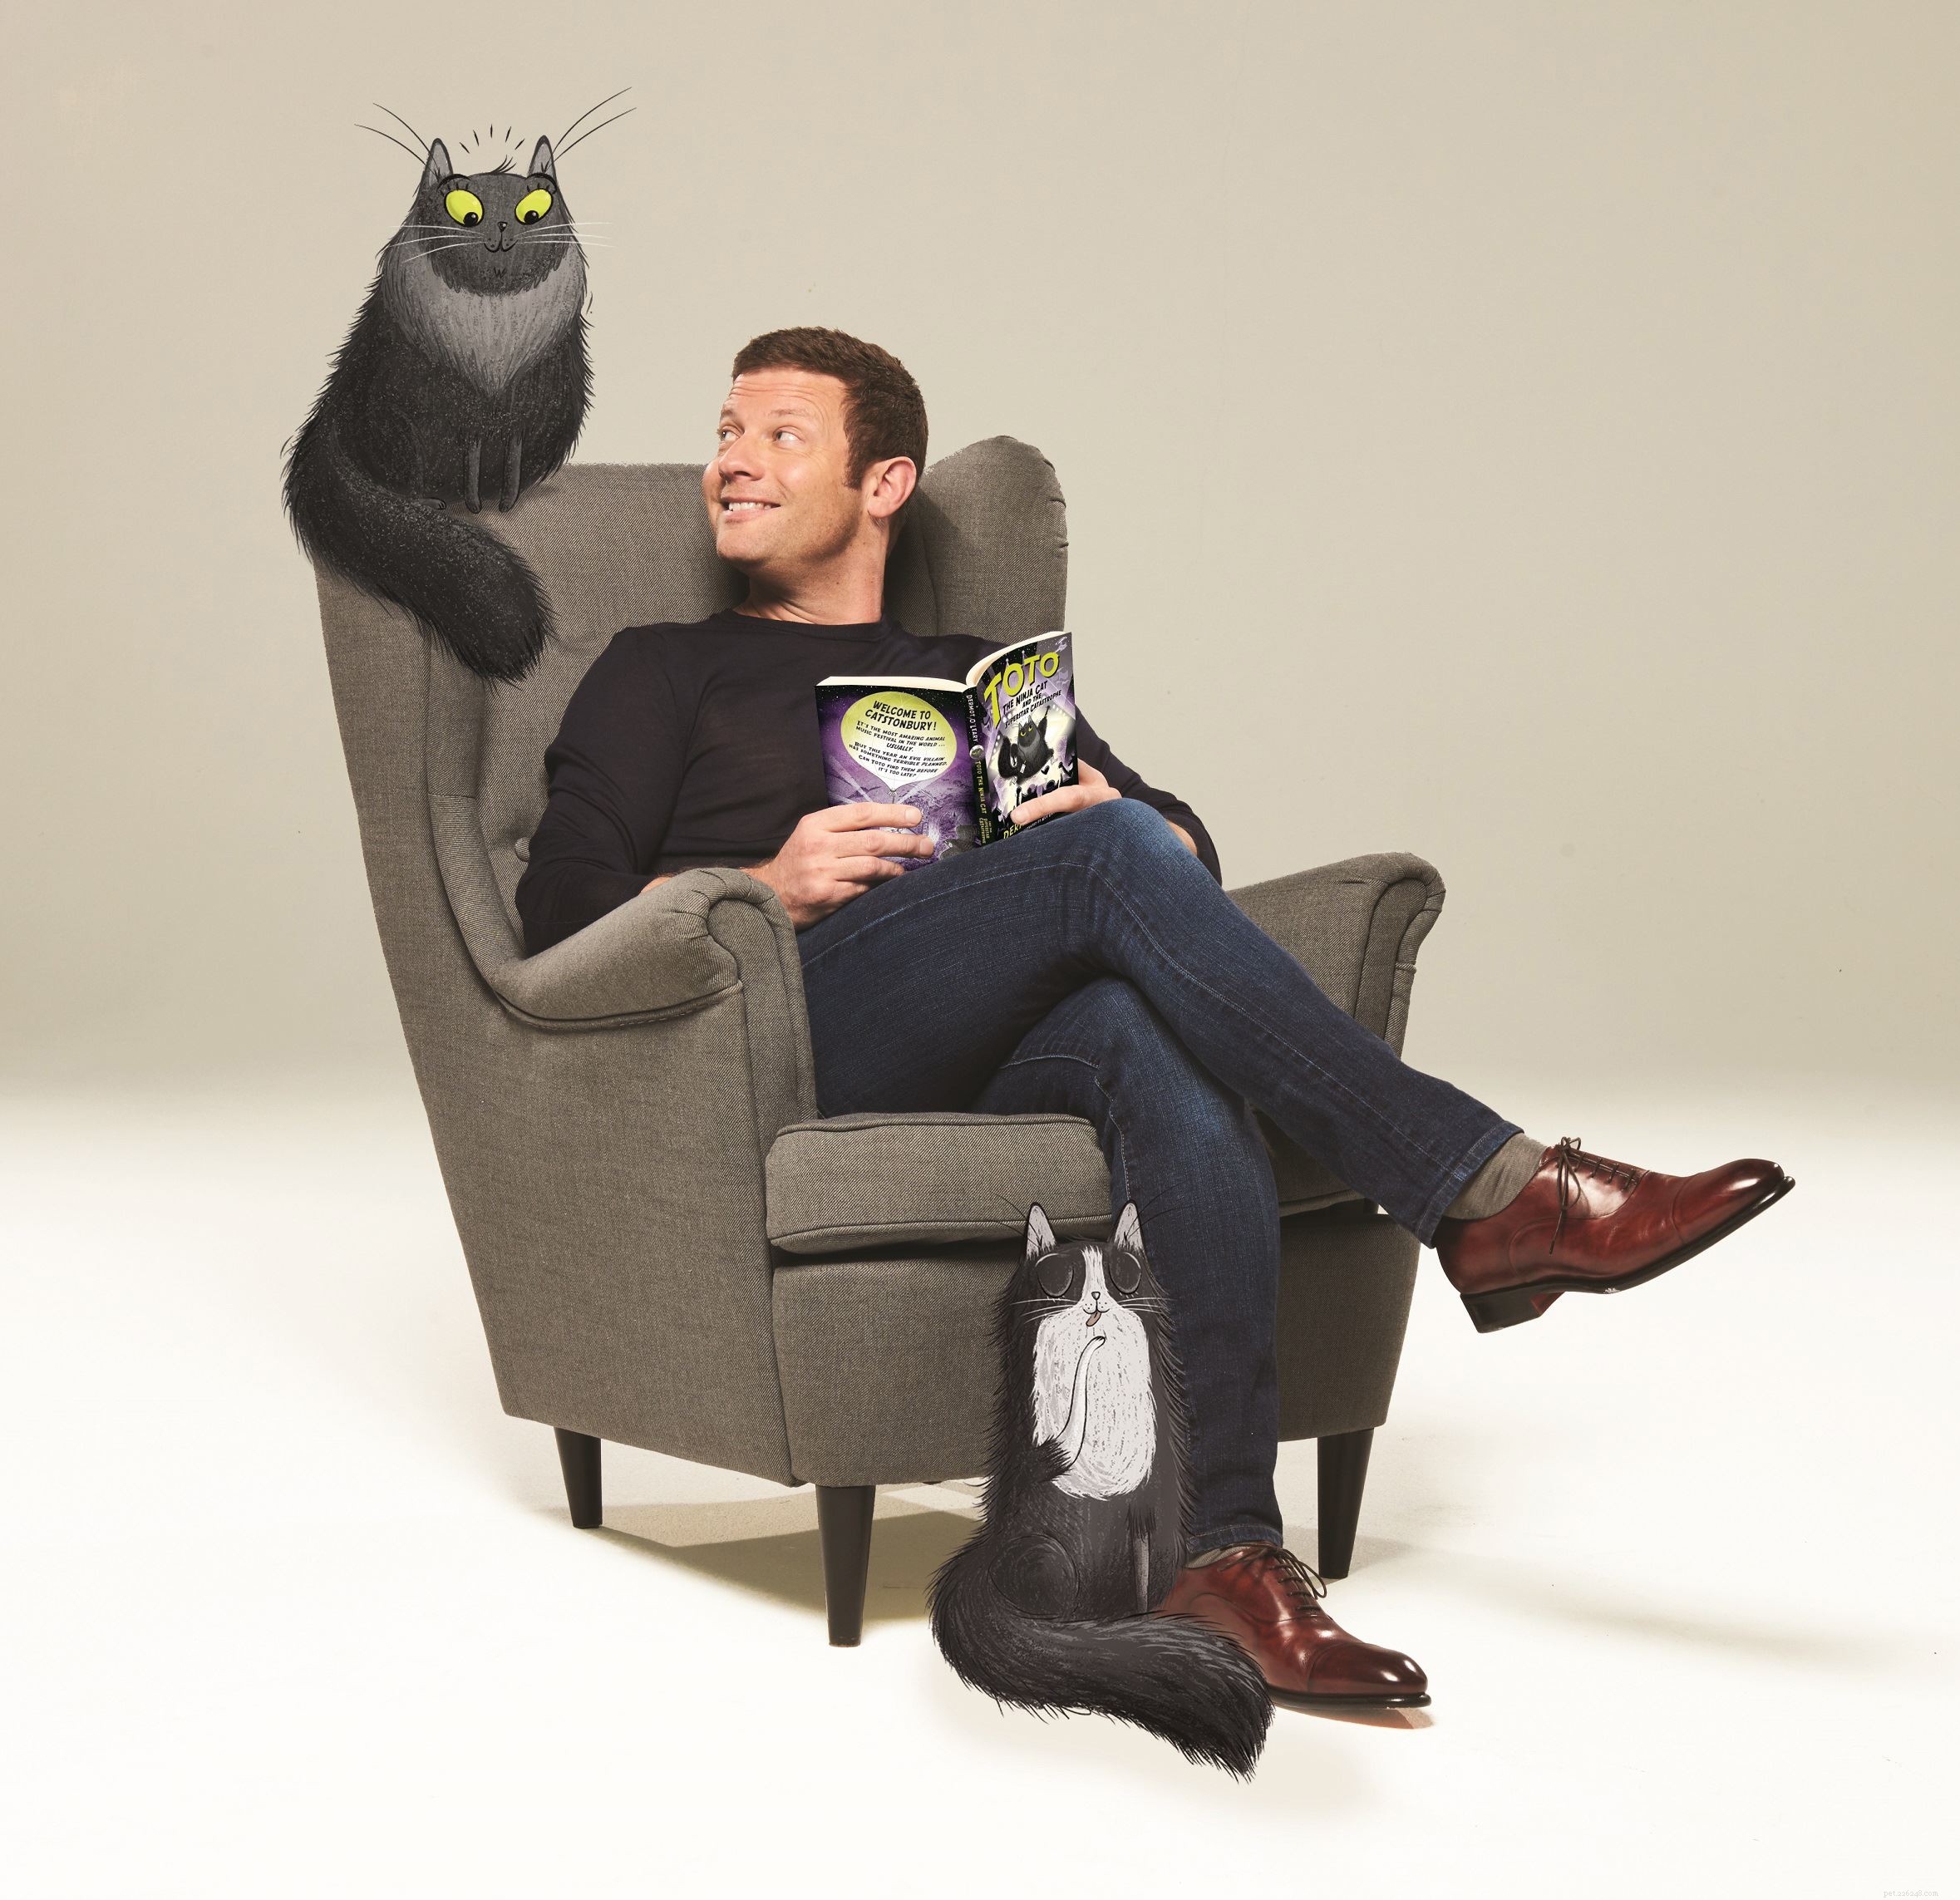 Om de lancering van zijn nieuwe Toto the Ninja Cat-boek te vieren, beantwoordt Dermot O Leary vragen van Cats Protection en jonge kattenfans 